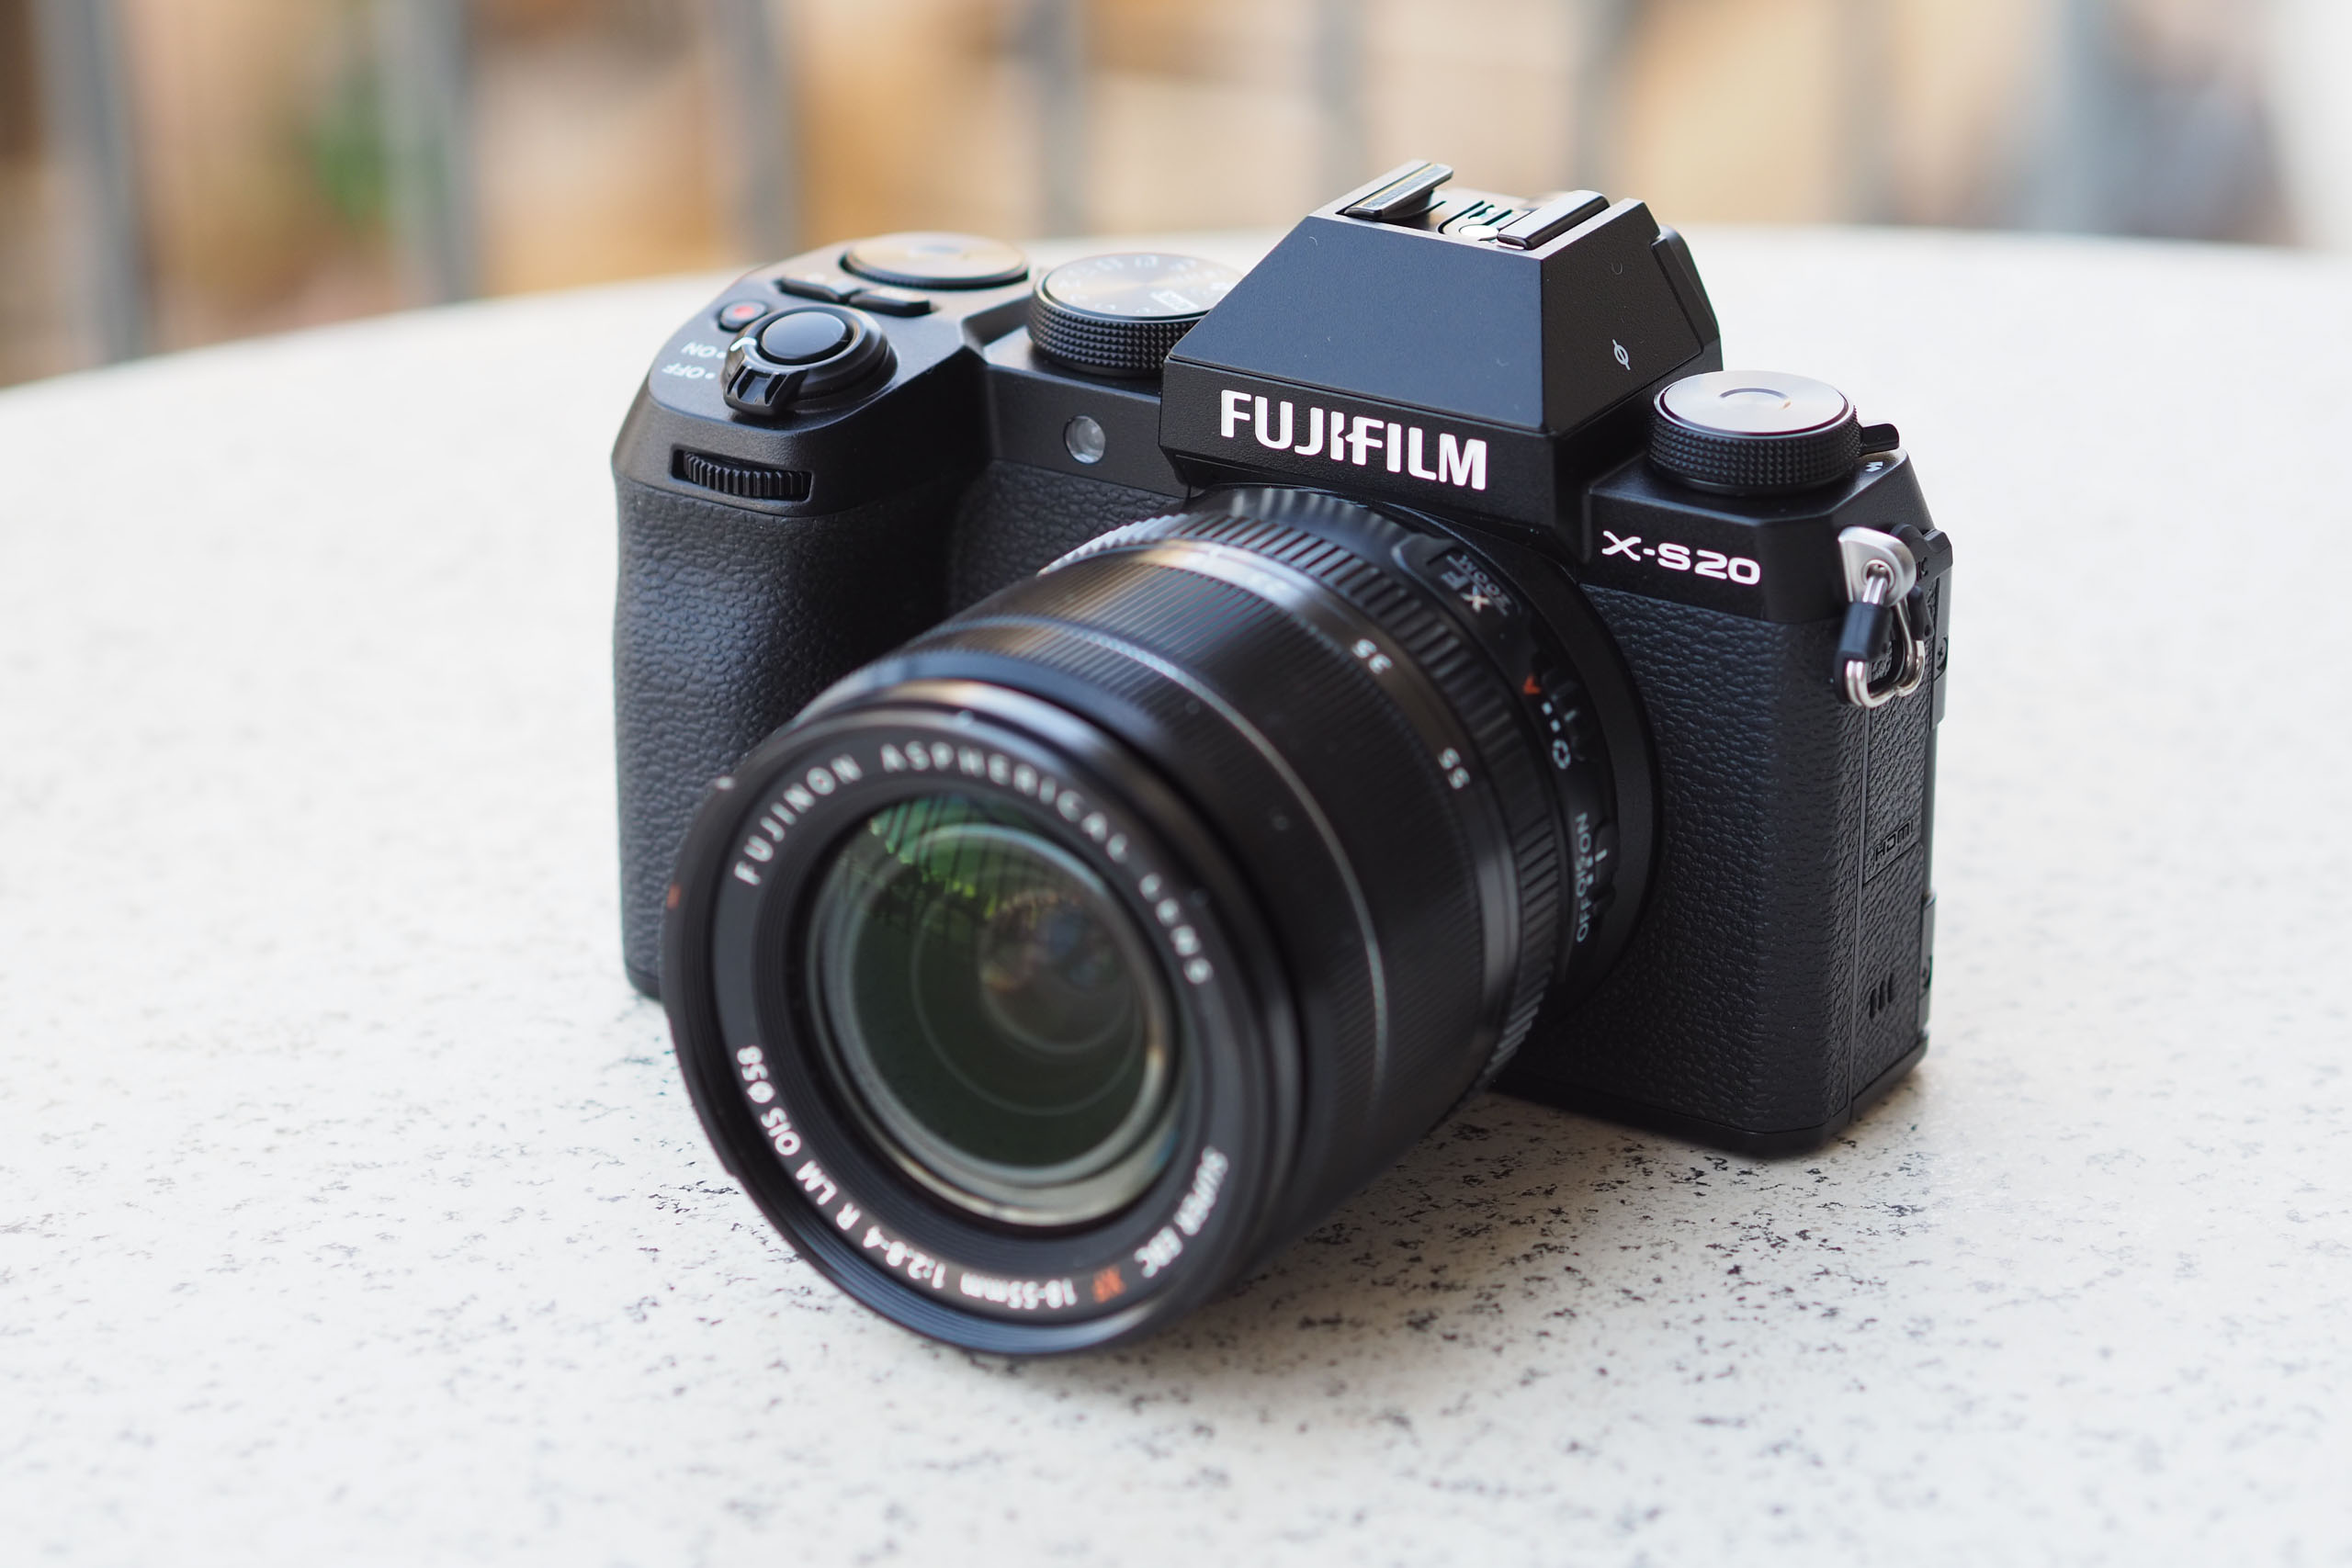 Fujifilm X-S20 In-Depth Review 